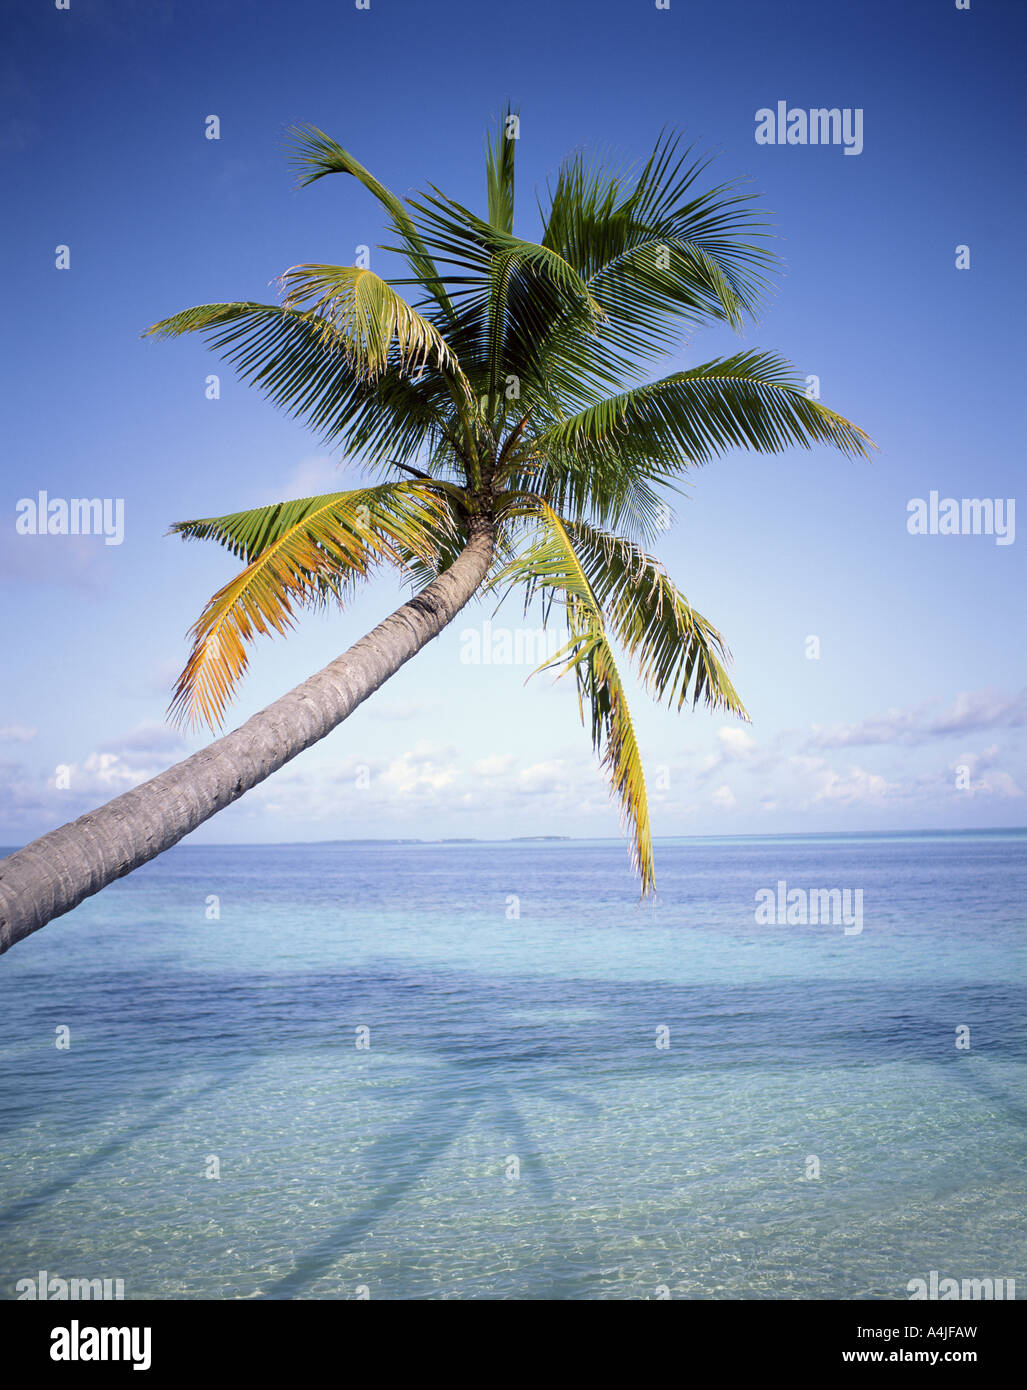 Playa Tropical mostrando palmera por el mar, la isla de bandos, Atolón Kaafu, República de Maldivas Foto de stock